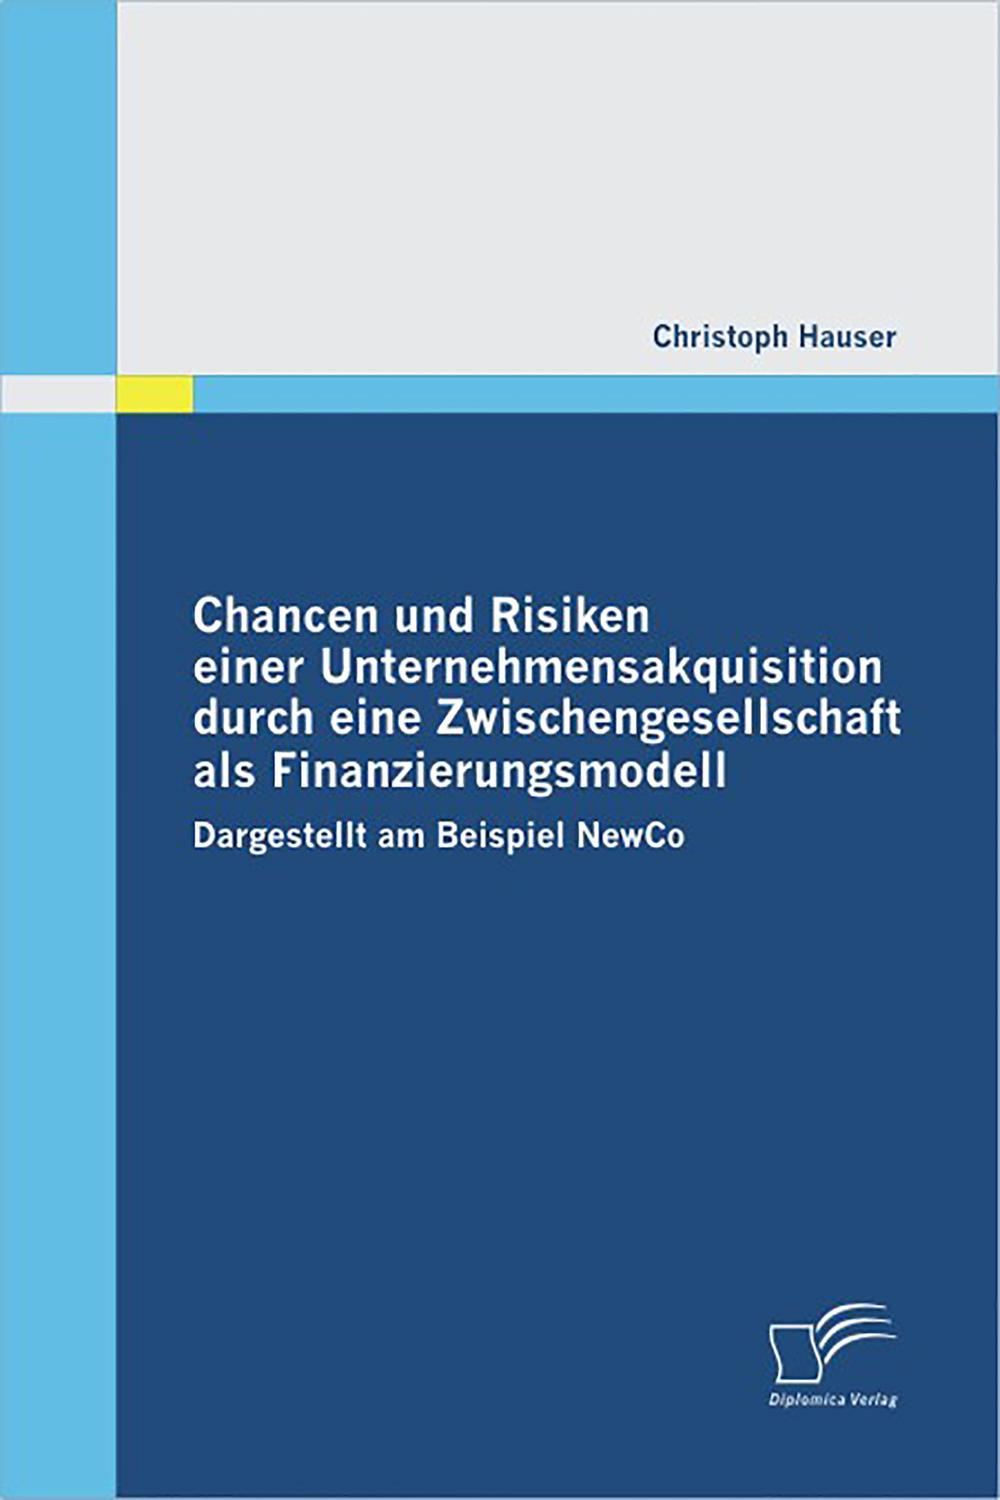 Chancen und Risiken einer Unternehmensakquisition durch eine Zwischengesellschaft als Finanzierungsmodell - Christoph Hauser